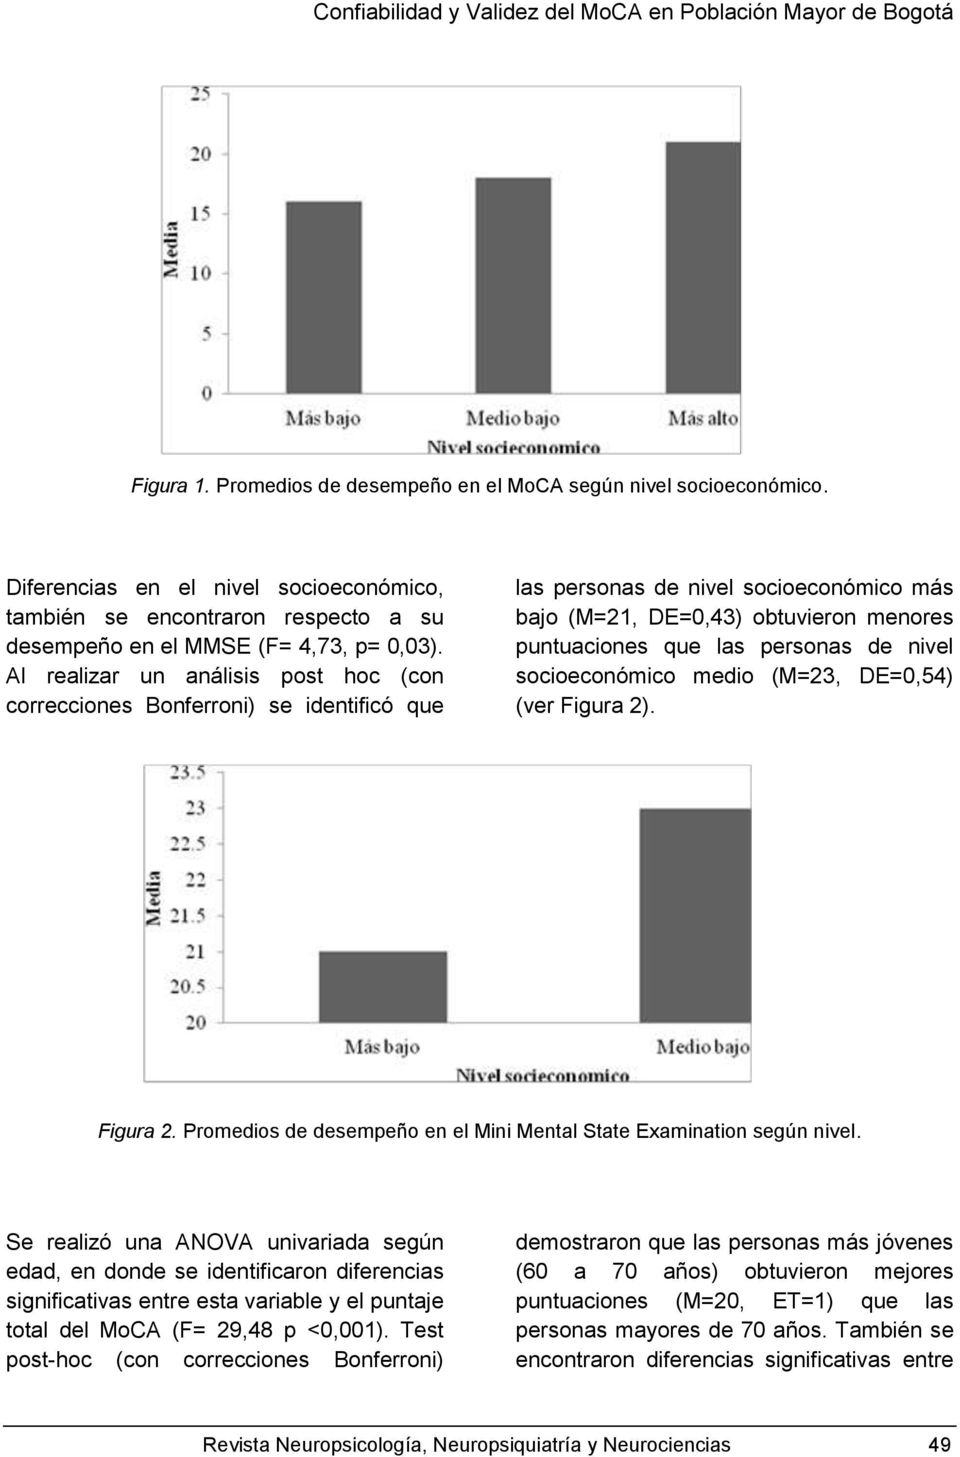 Al realizar un análisis post hoc (con correcciones Bonferroni) se identificó que las personas de nivel socioeconómico más bajo (M=21, DE=0,43) obtuvieron menores puntuaciones que las personas de